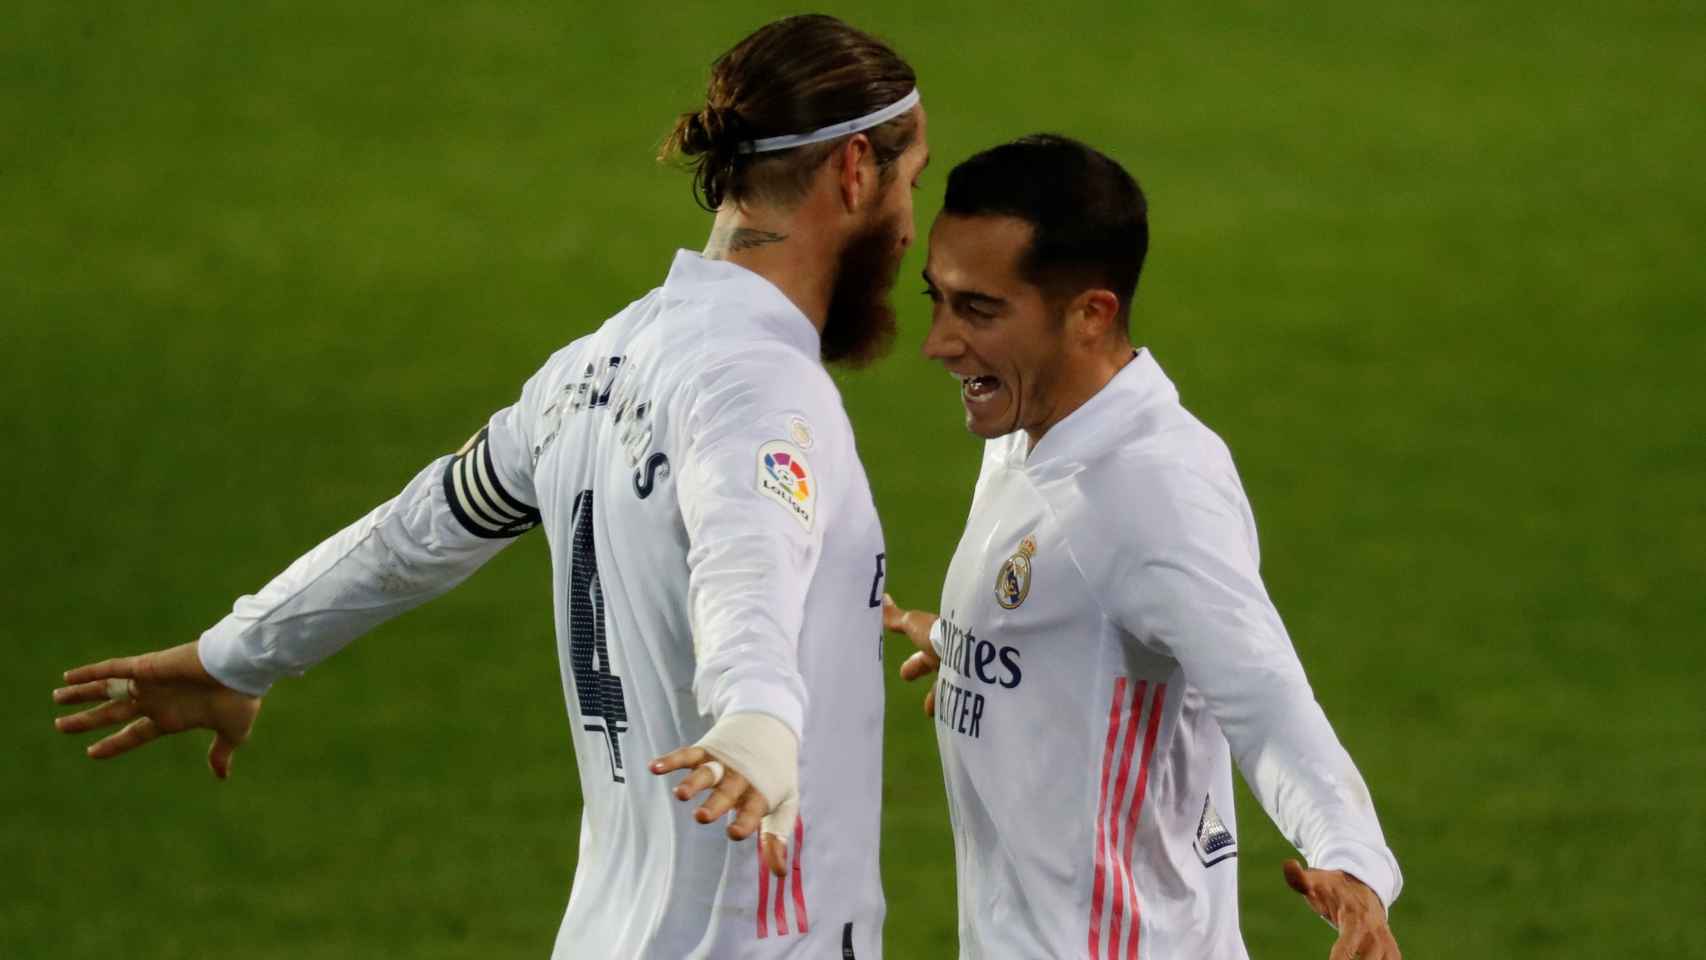 Sergio Ramos y Lucas Vázquez celebran un gol